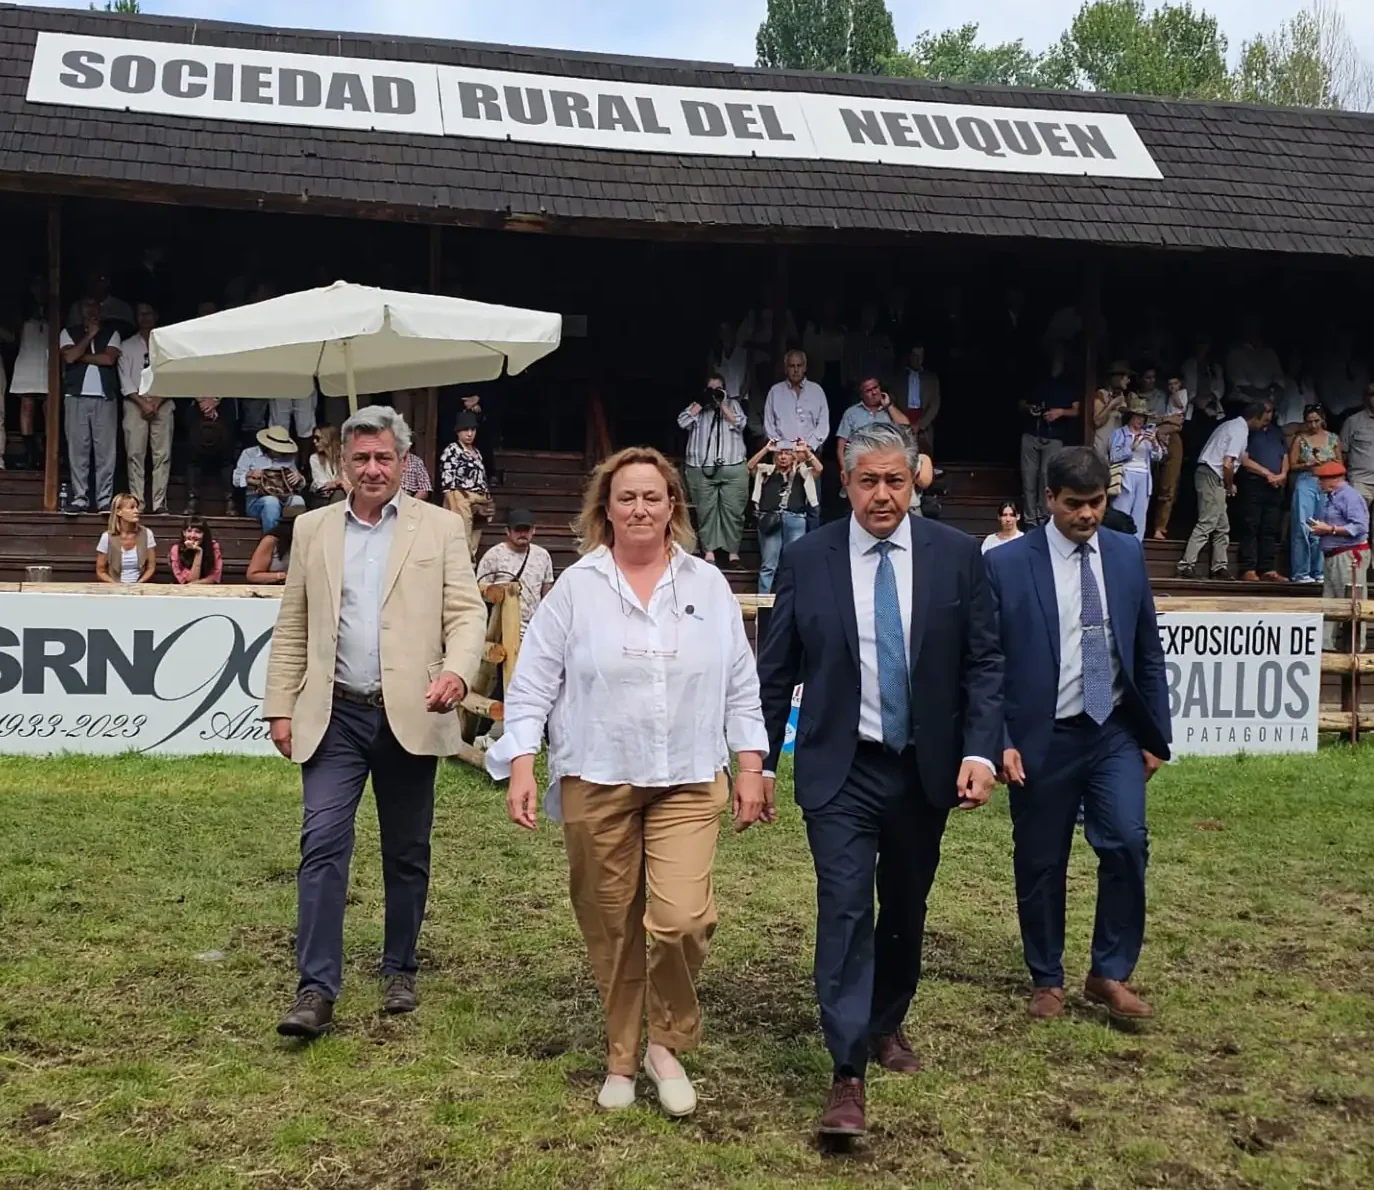 La Sociedad Rural del Neuquén presenta sus exposiciones ganaderas en Buenos Aires